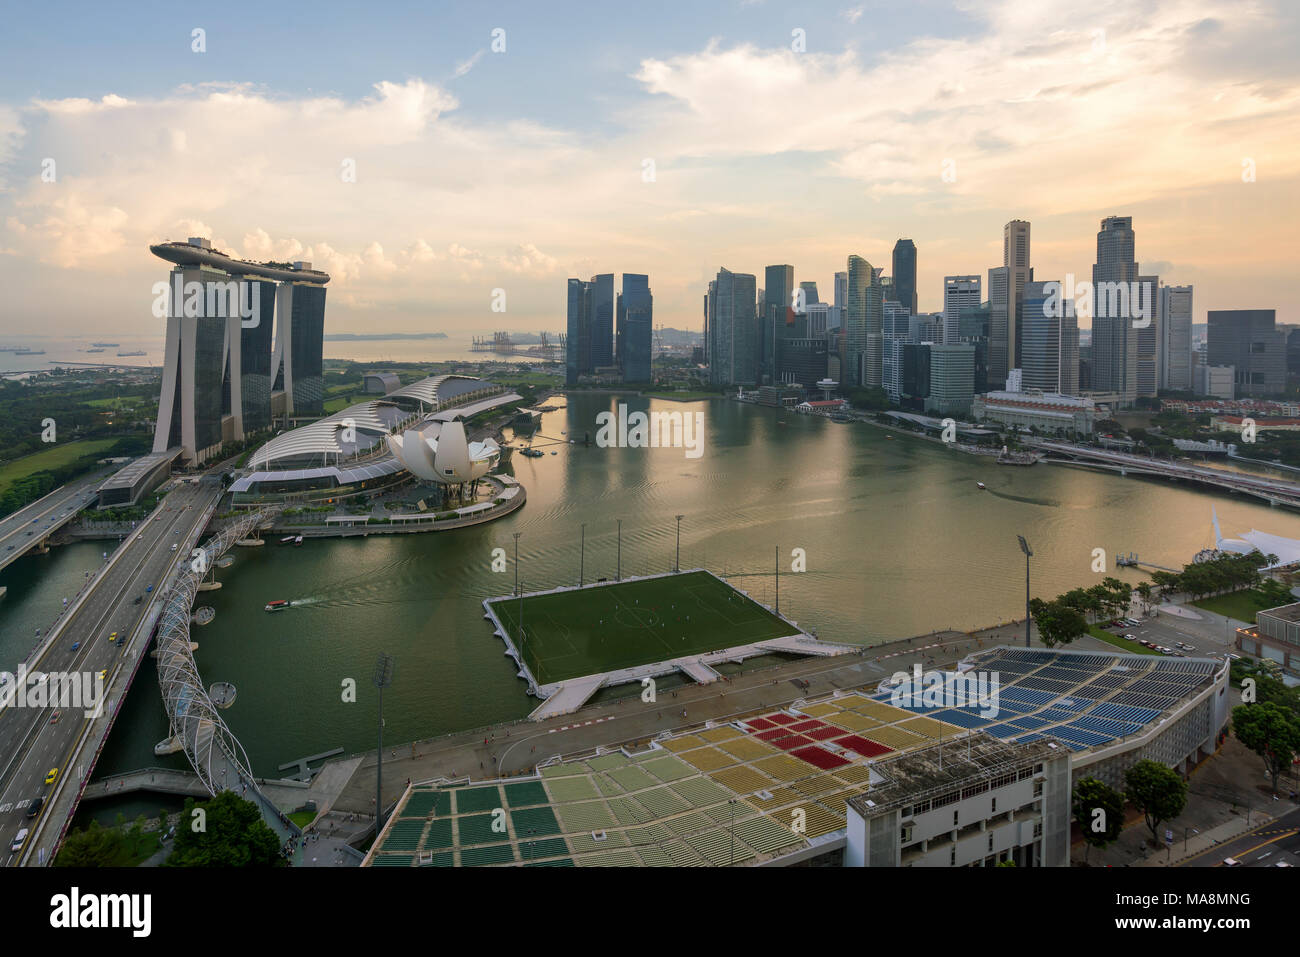 Panorama du quartier des affaires de Singapour Singapour skyline et gratte-ciel du matin, à Marina Bay, Singapour. Asie Banque D'Images